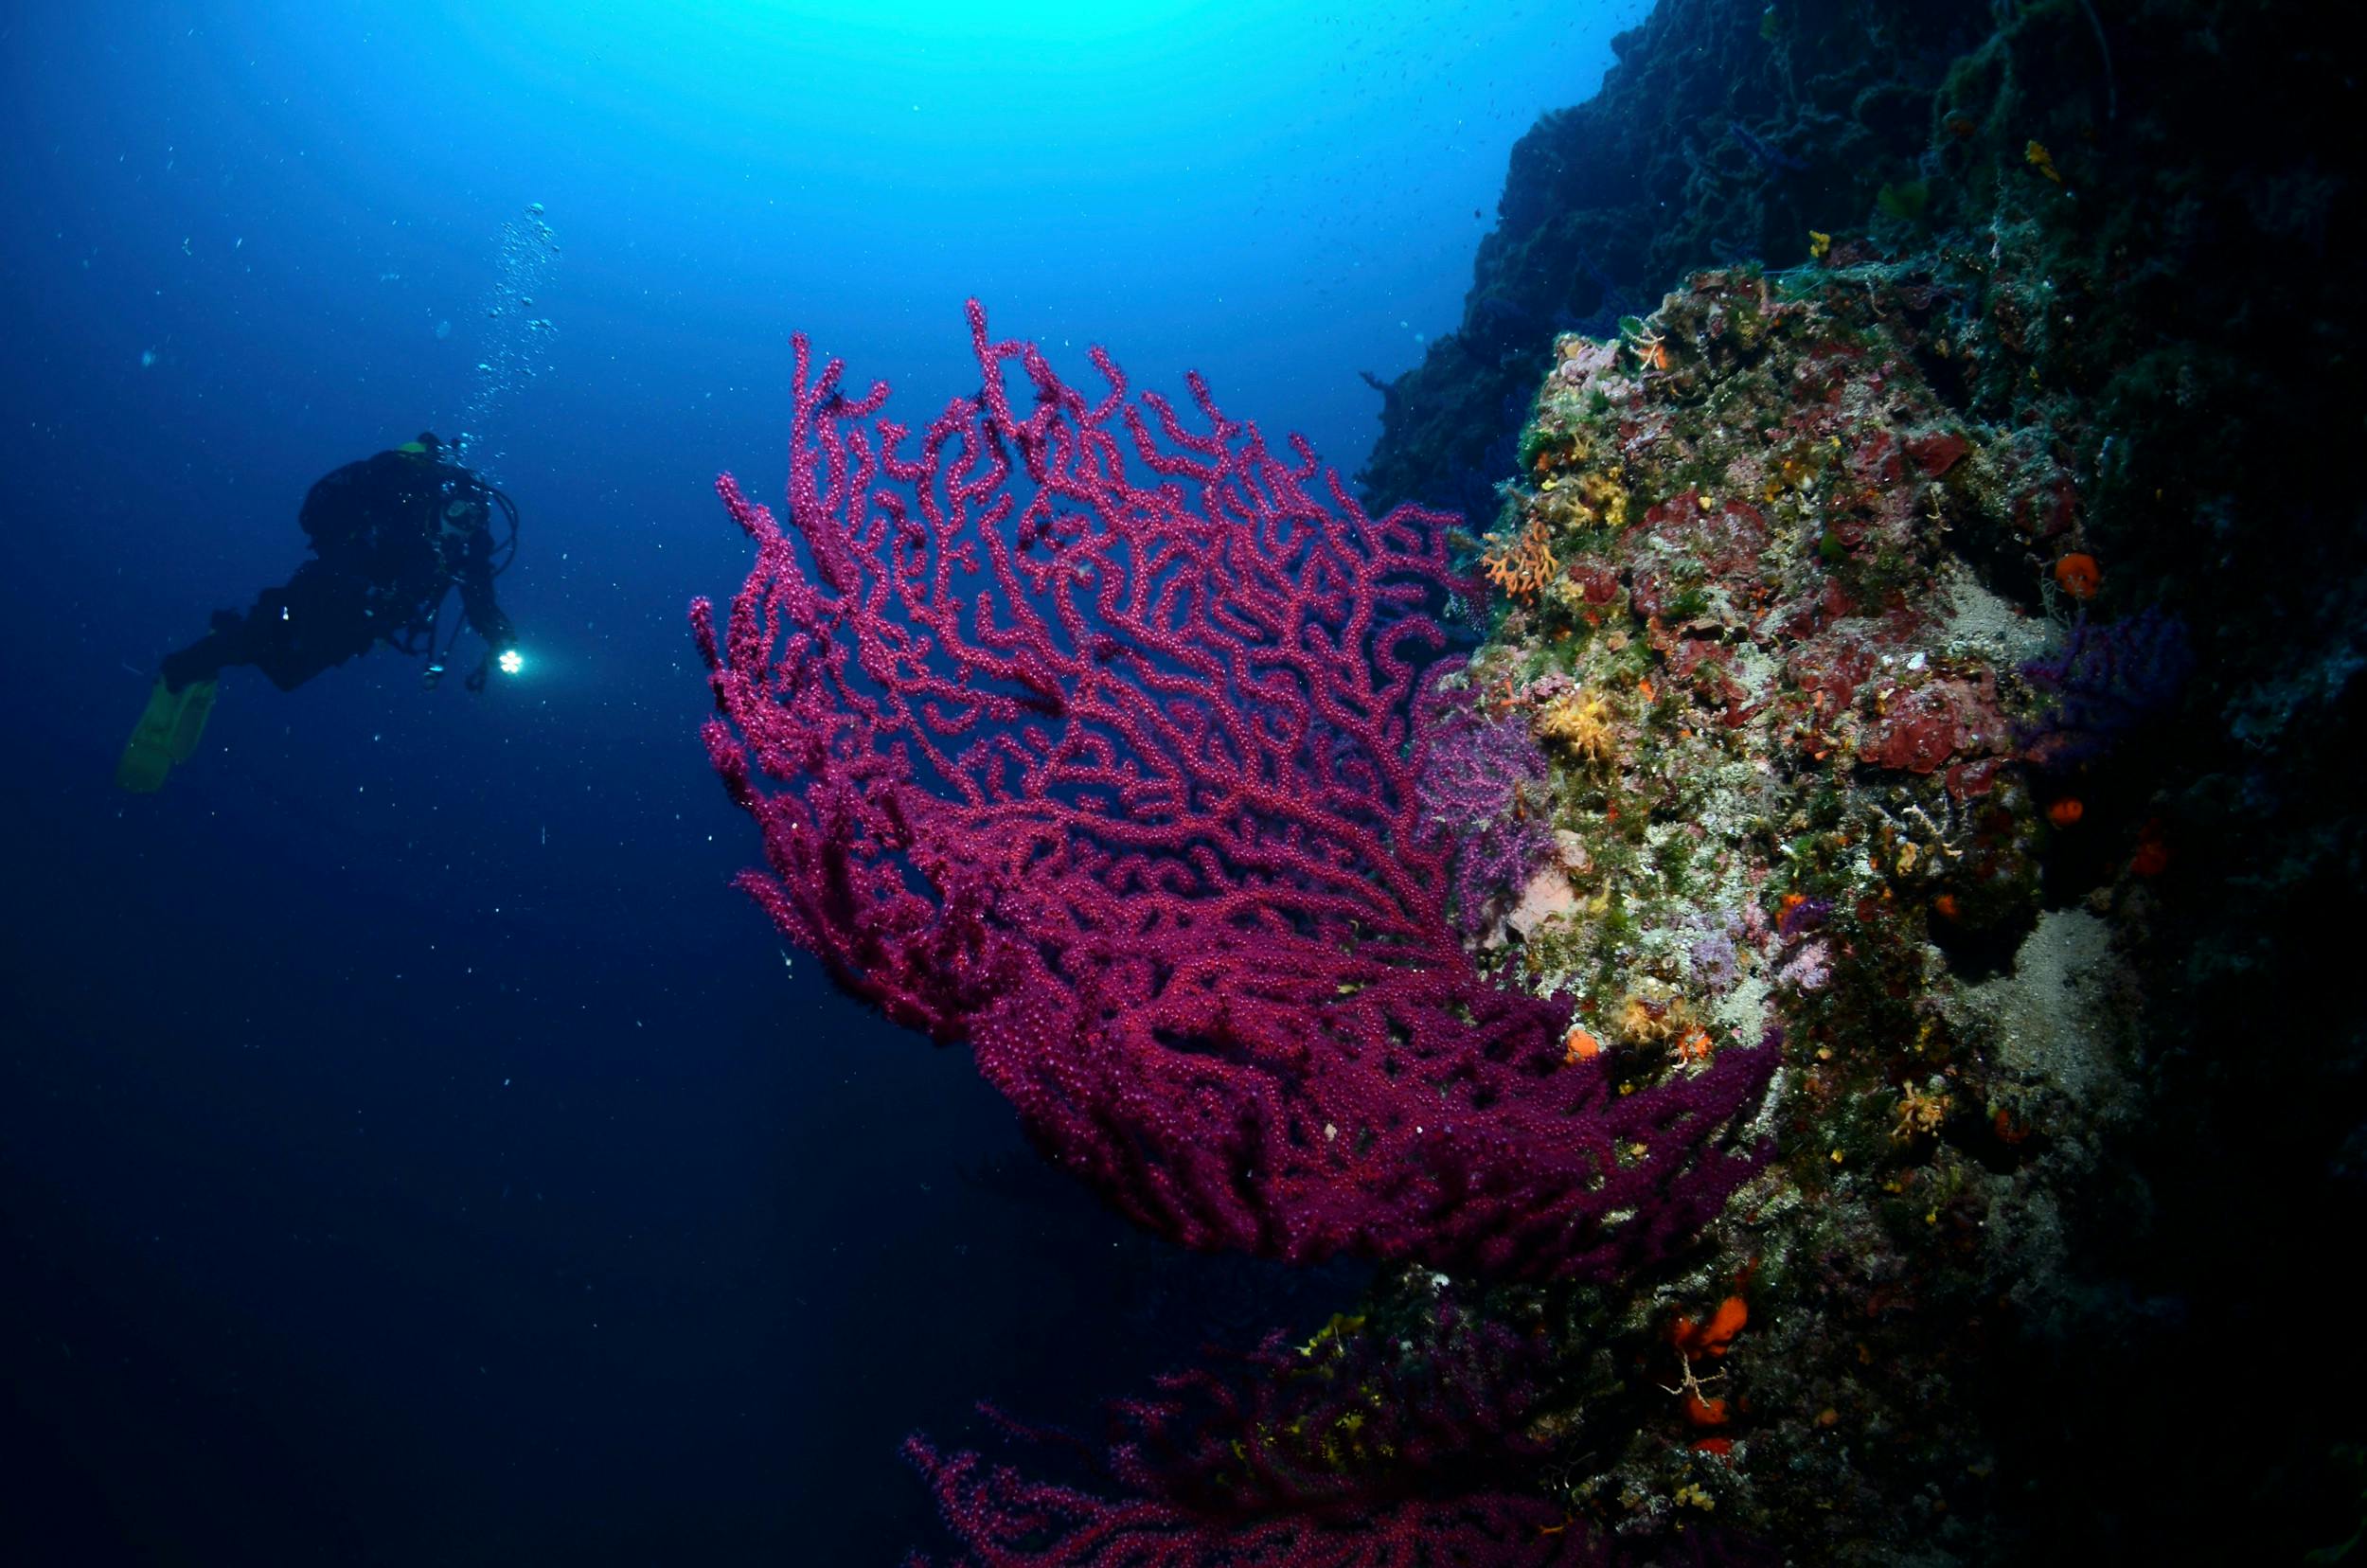 De røder koraller tiltrækker dykkere og også lokale, der omdanner dem til smykker. Vær opmærksom på reglerne for bæredygtigt koralfiskeri.